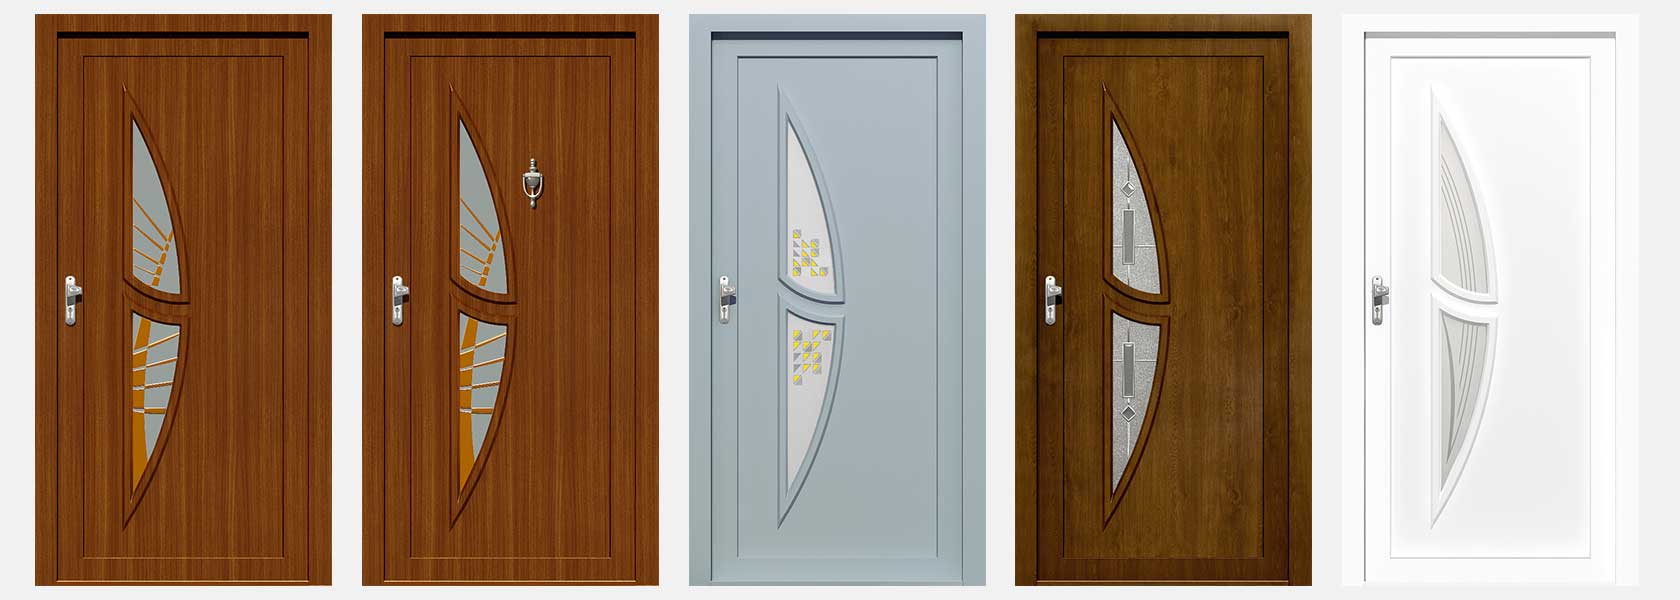 HPL doors, front doors panels